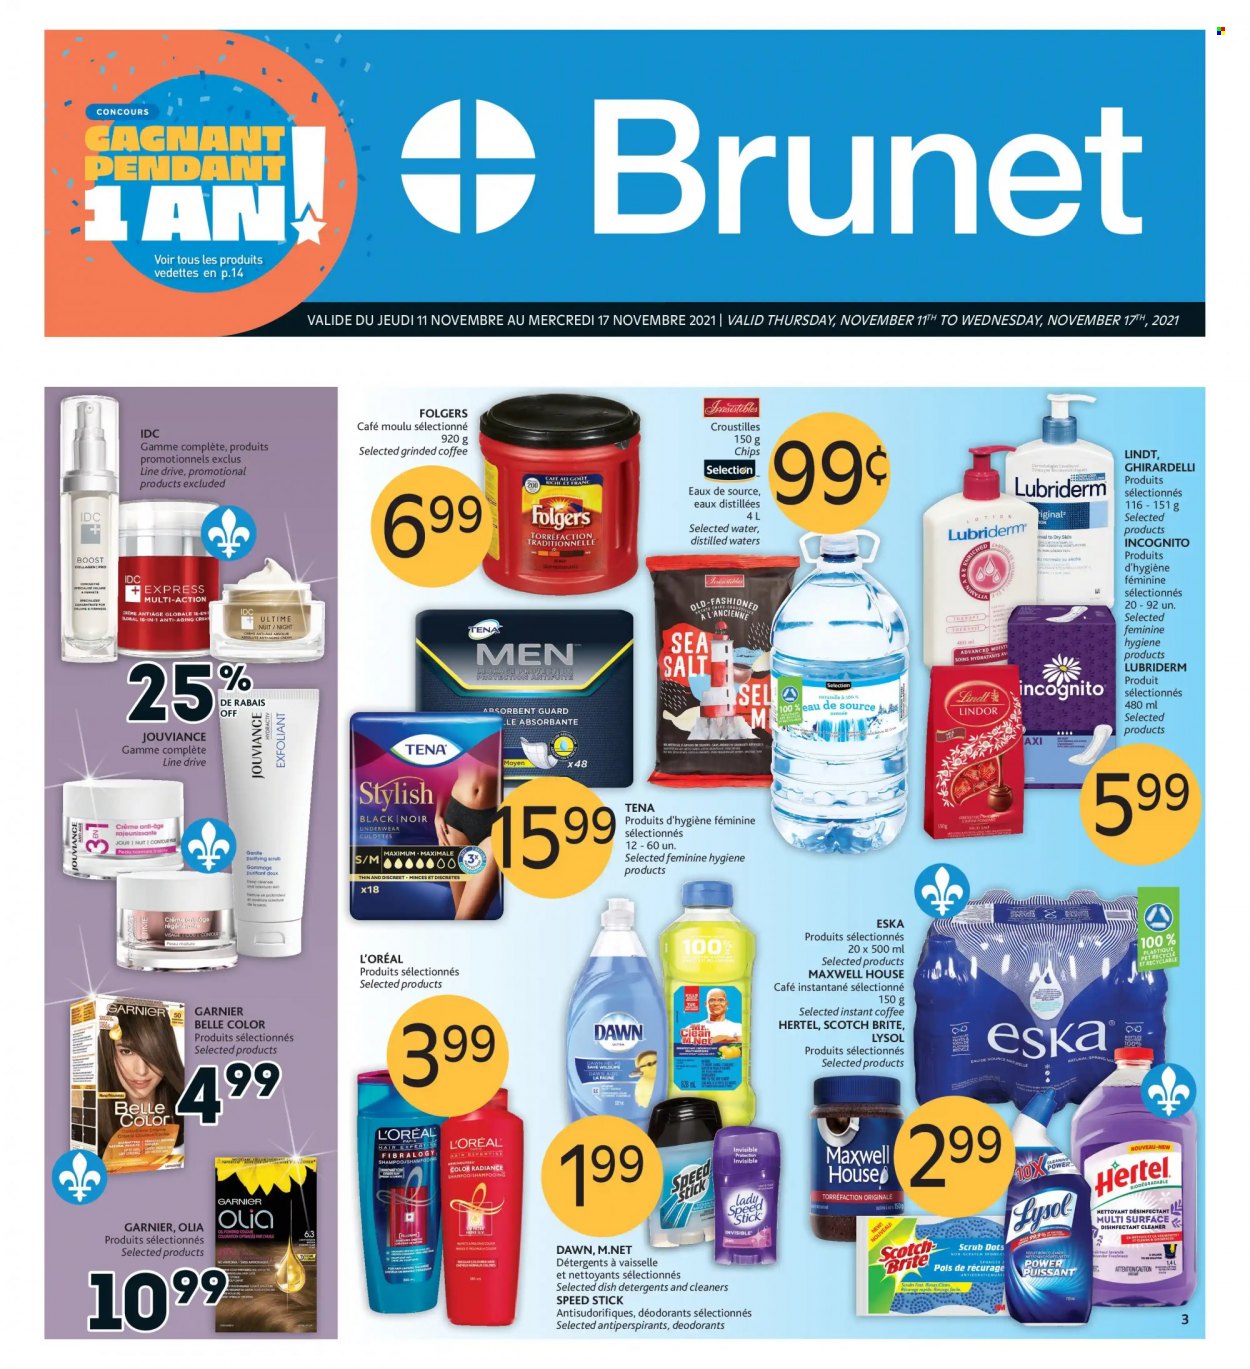 thumbnail - Circulaire Brunet - 11 Novembre 2021 - 17 Novembre 2021 - Produits soldés - sel, shampooing, Discreet, L'Oréal, Garnier, Tena, Lindor, Lindt. Page 1.